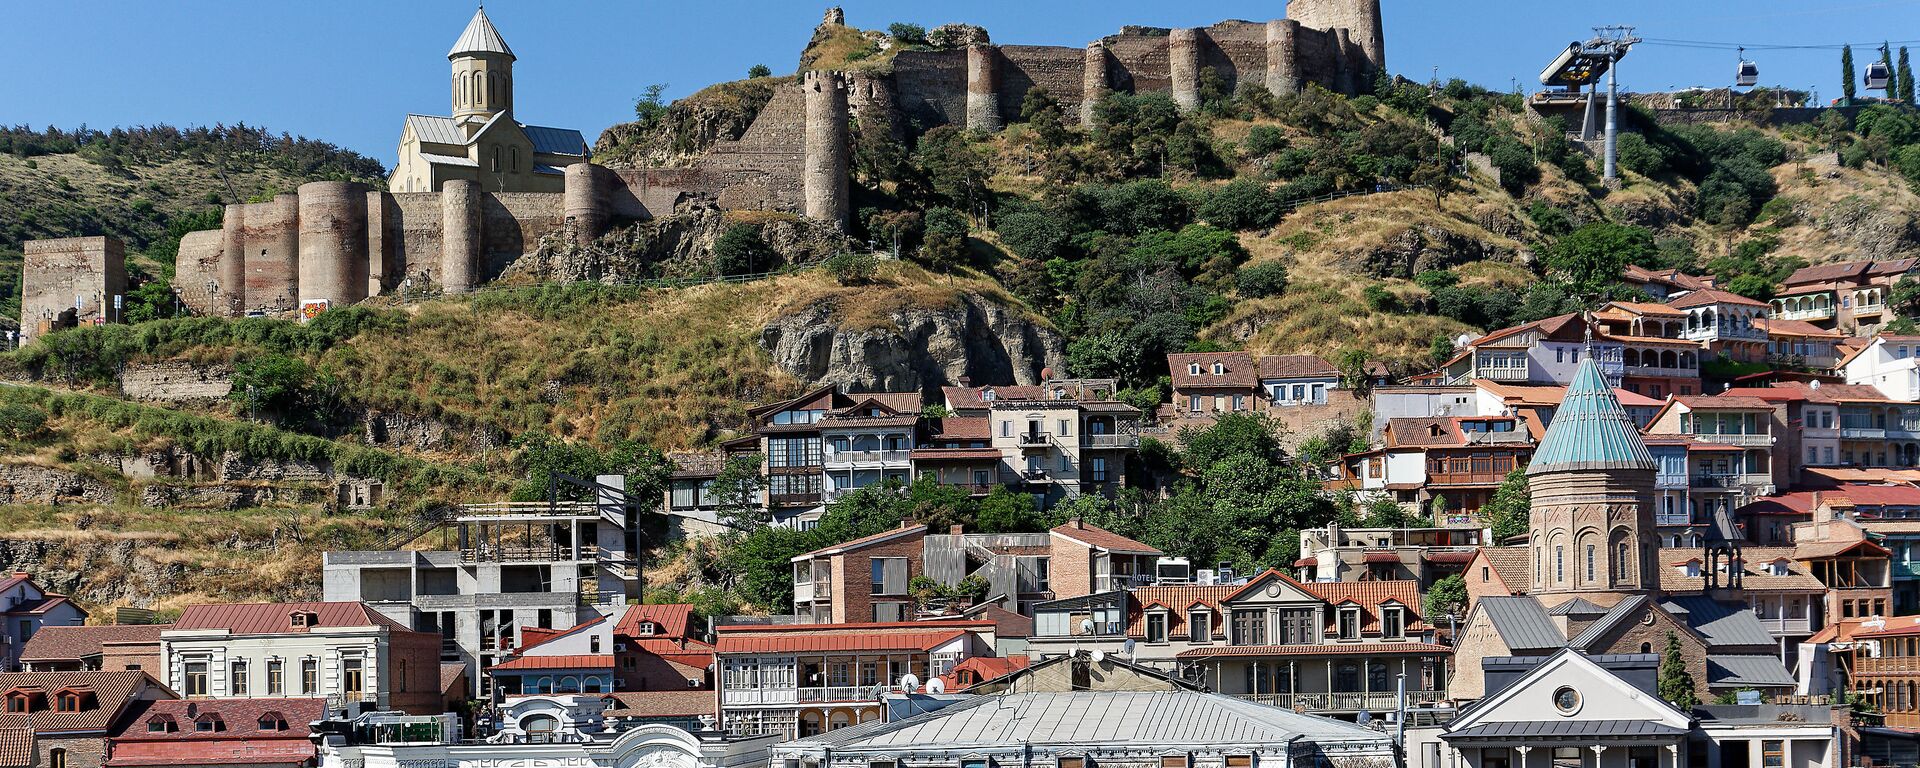 Вид на город Тбилиси - старый город, крепость Нарикала и Калаубани, церкви армянская и грузинская - Sputnik Грузия, 1920, 17.06.2021